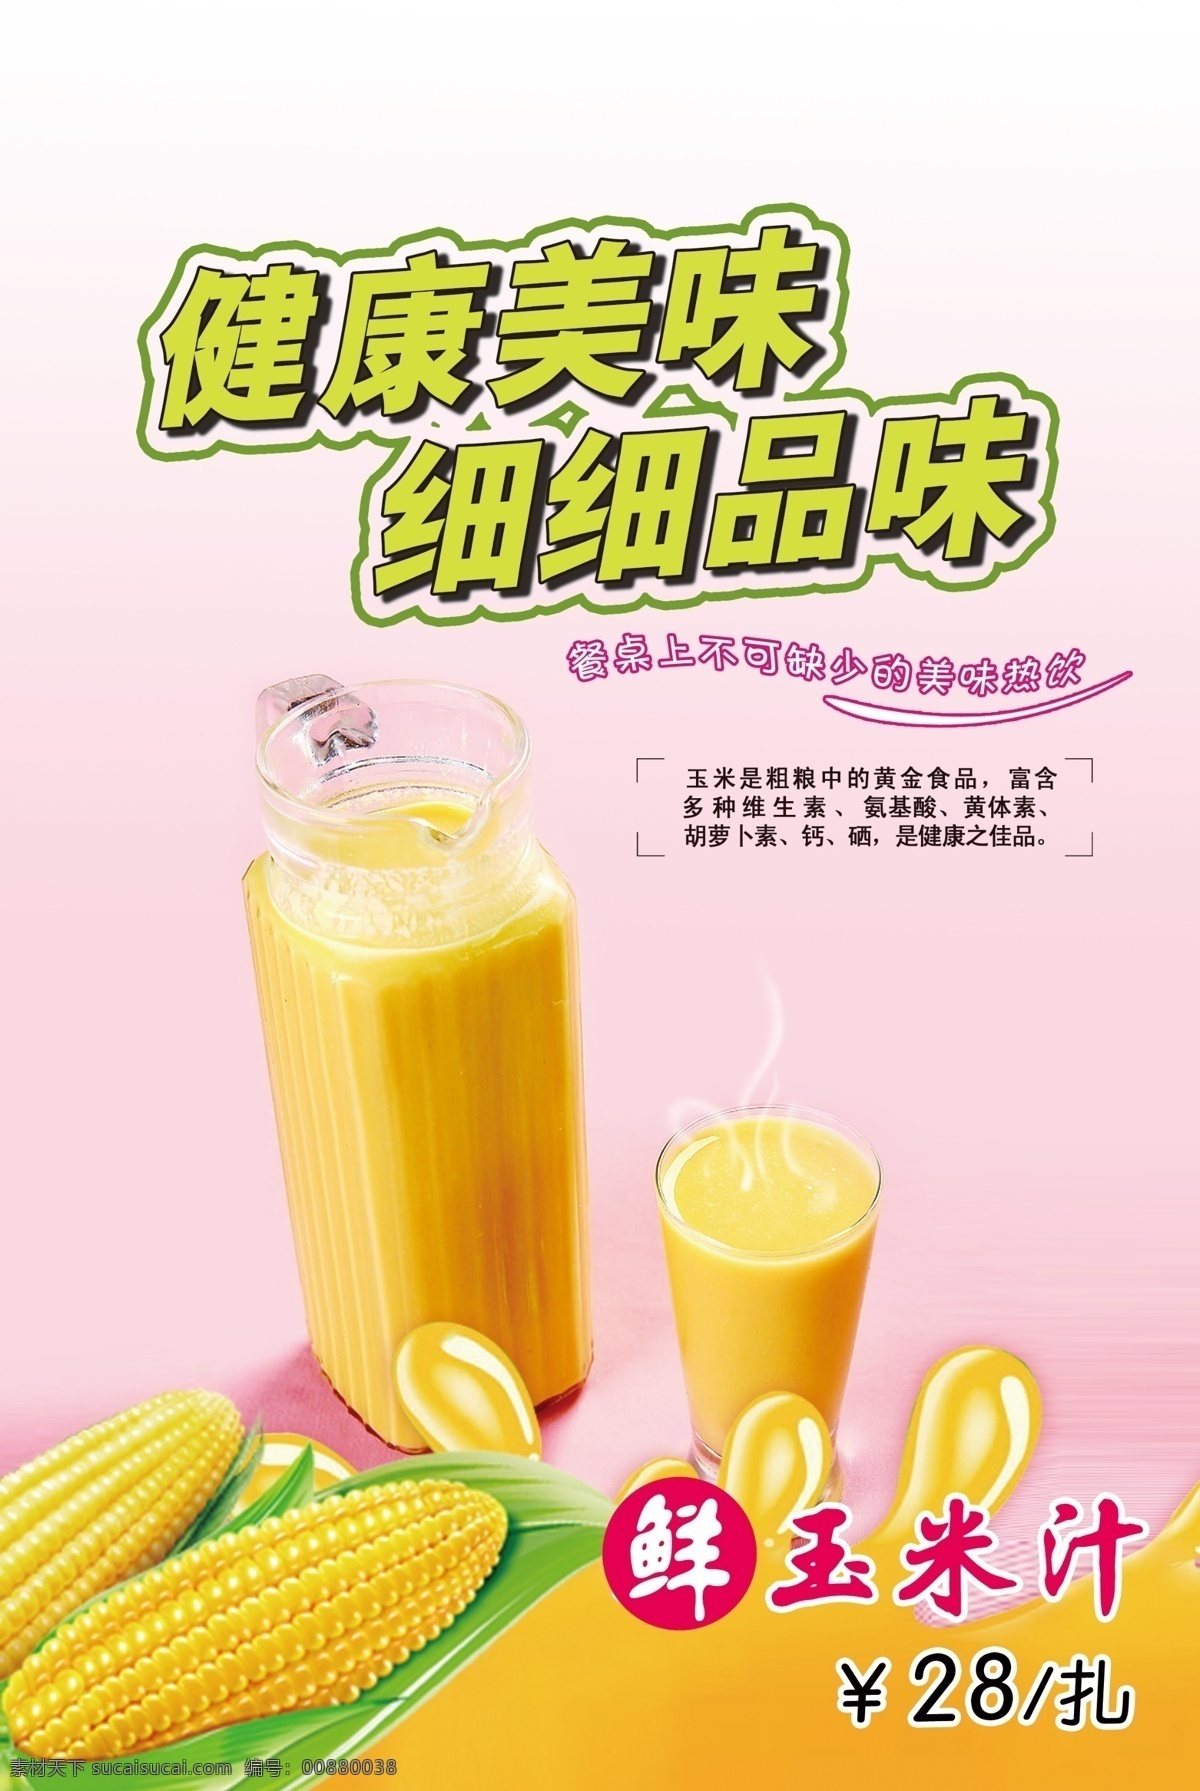 冬季 广告设计模板 果汁 热饮 玉米 源文件 鲜榨玉米汁 健康 美味 细细 品味 餐桌 上 不可 缺少 扎 其他海报设计